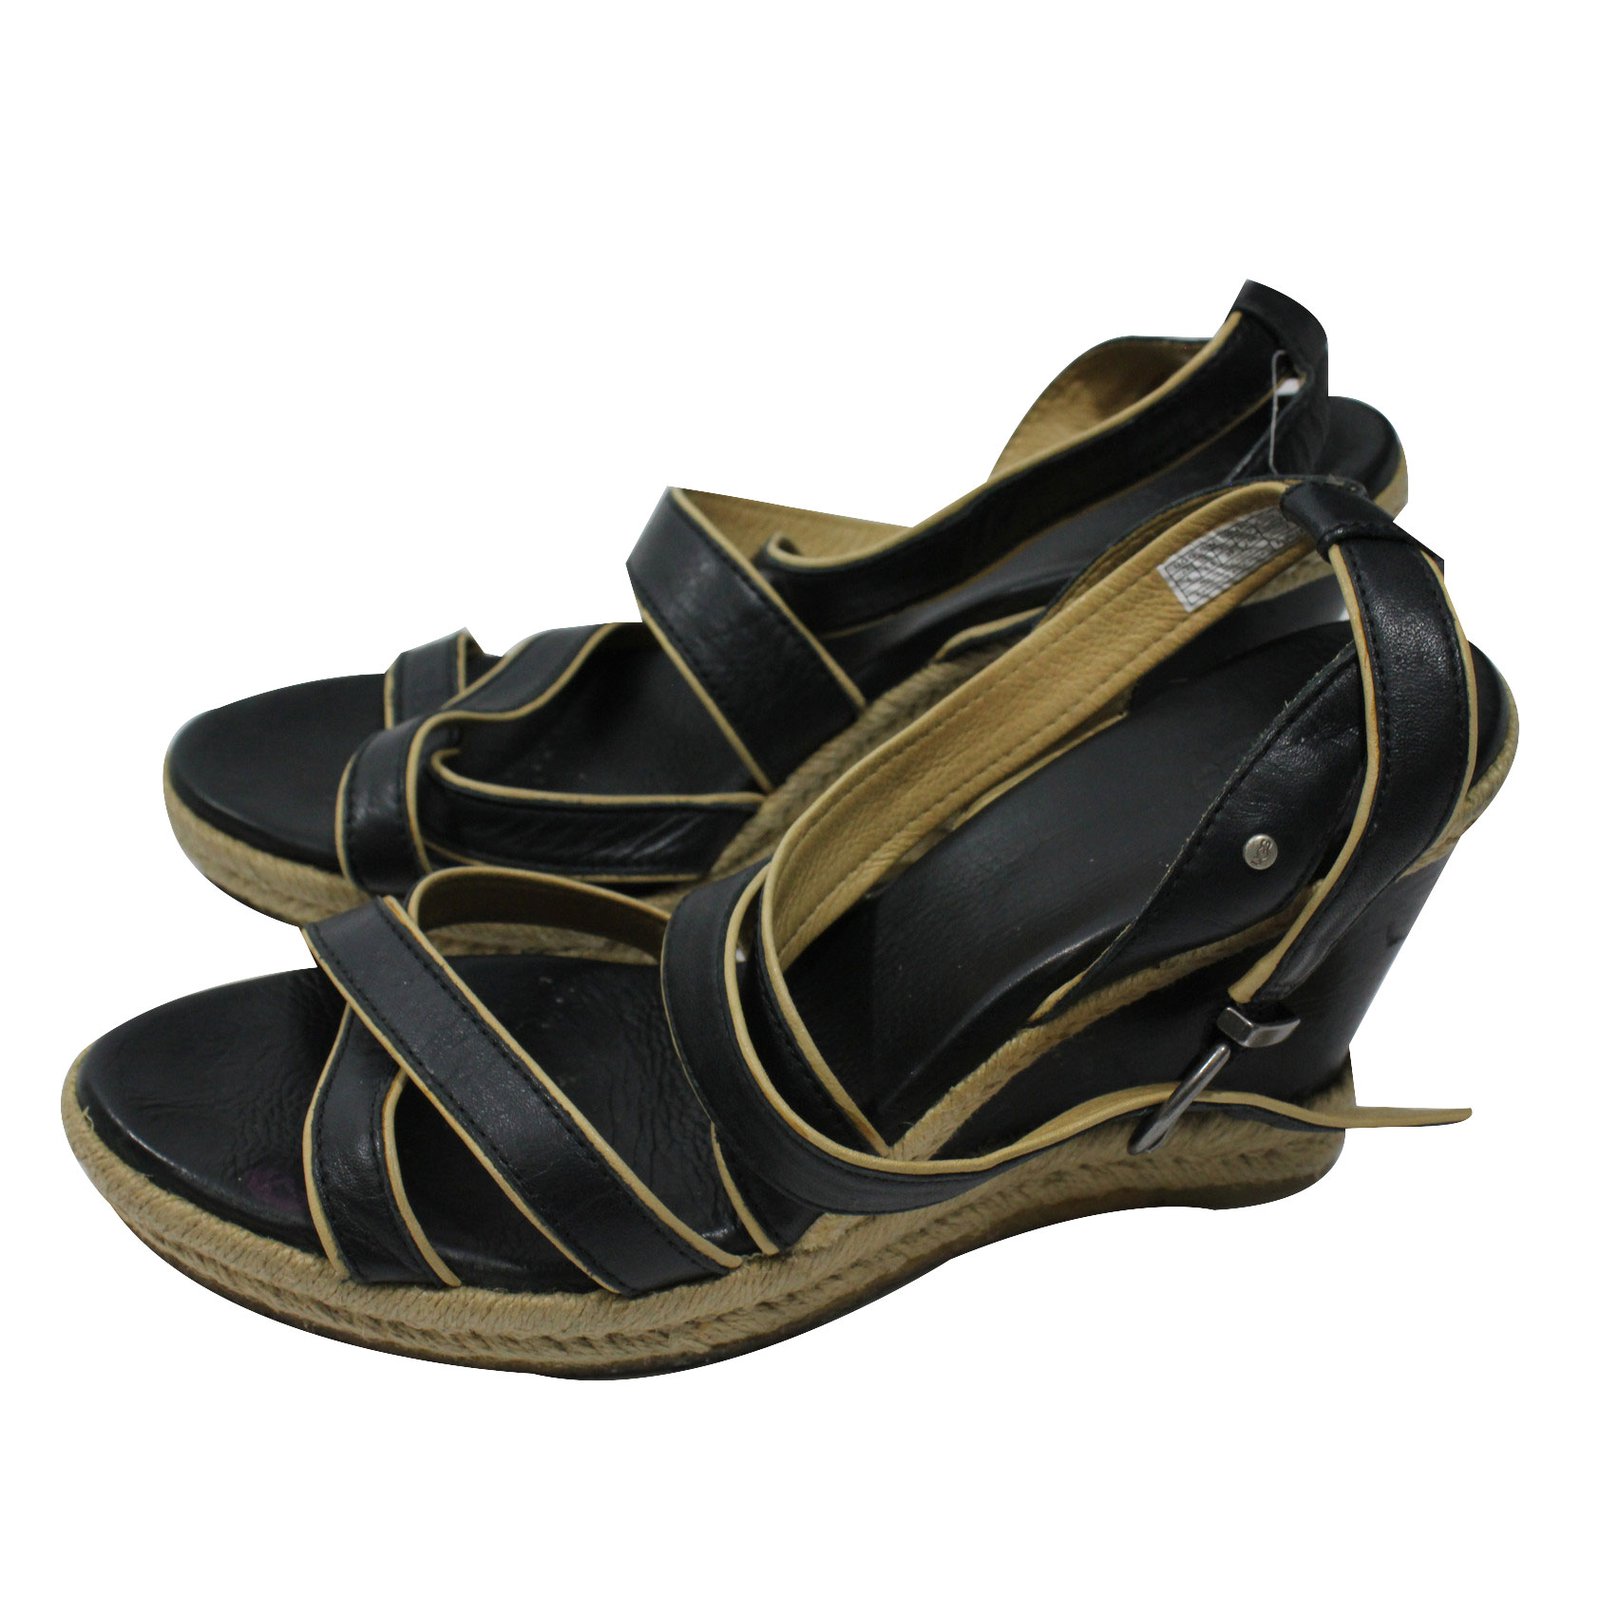 ugg wedge sandals black